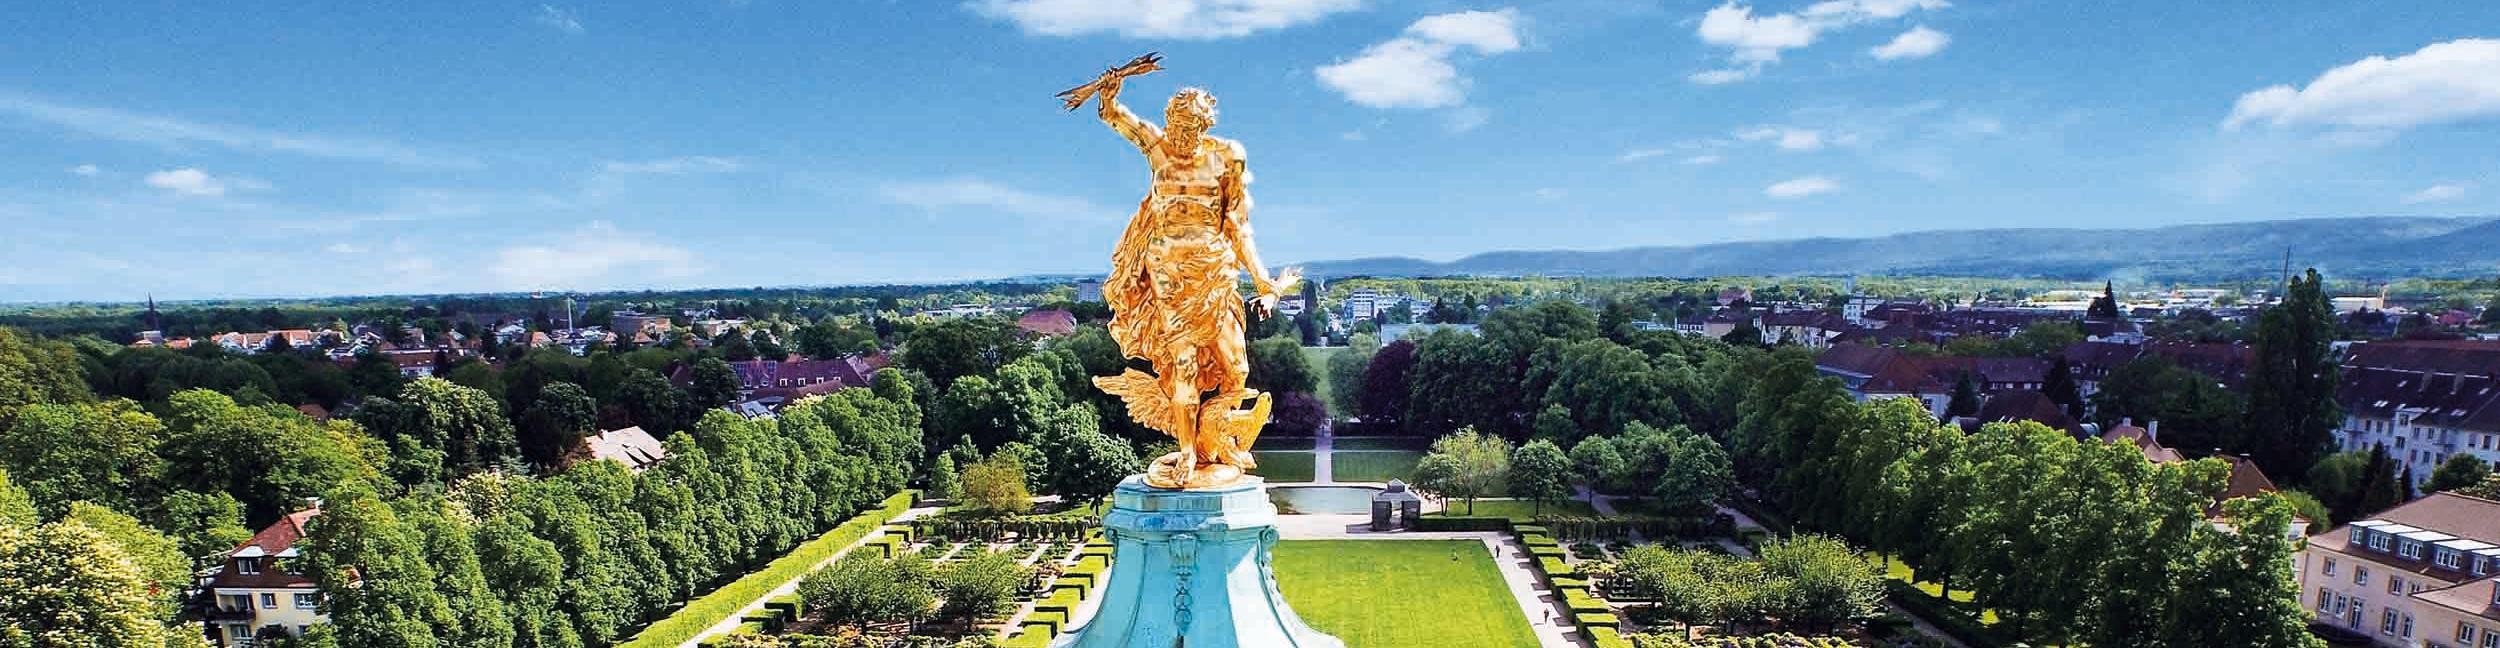 Golden man castle Rastatt.